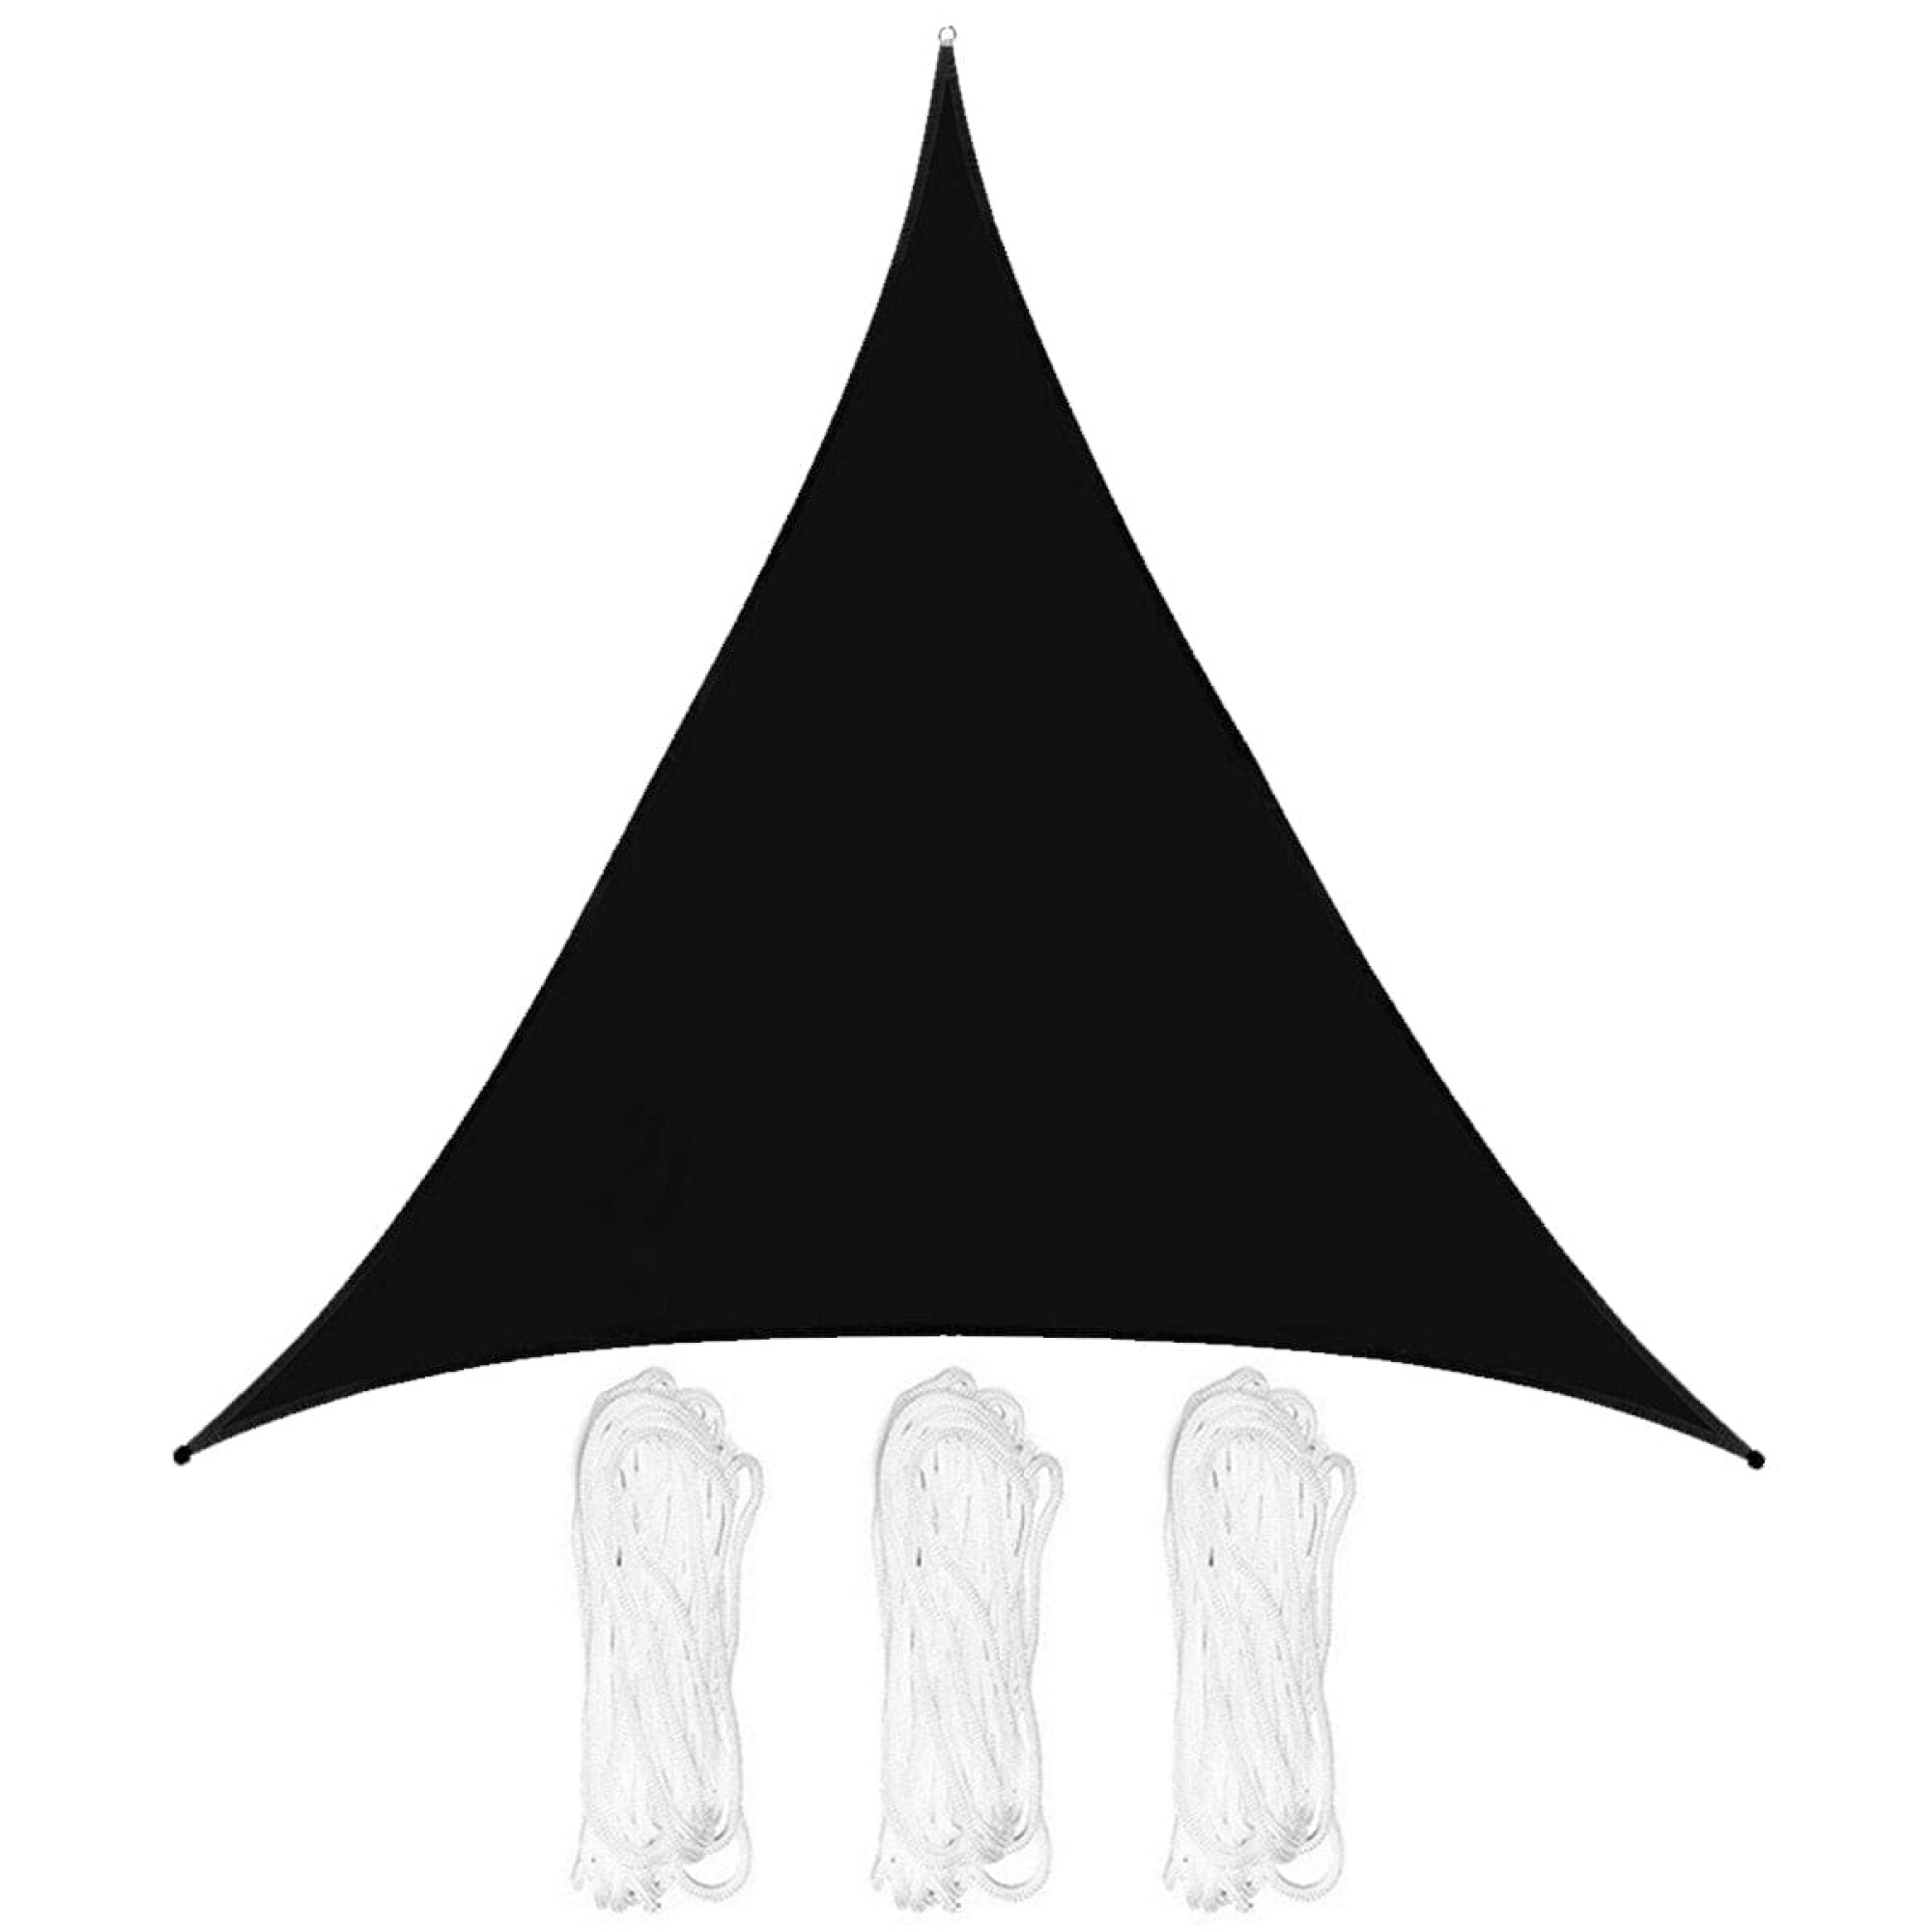 Lona Toldo Vela Triangular Filtro Uv 3,6m Sombra - Blanco — El Rey del  entretenimiento